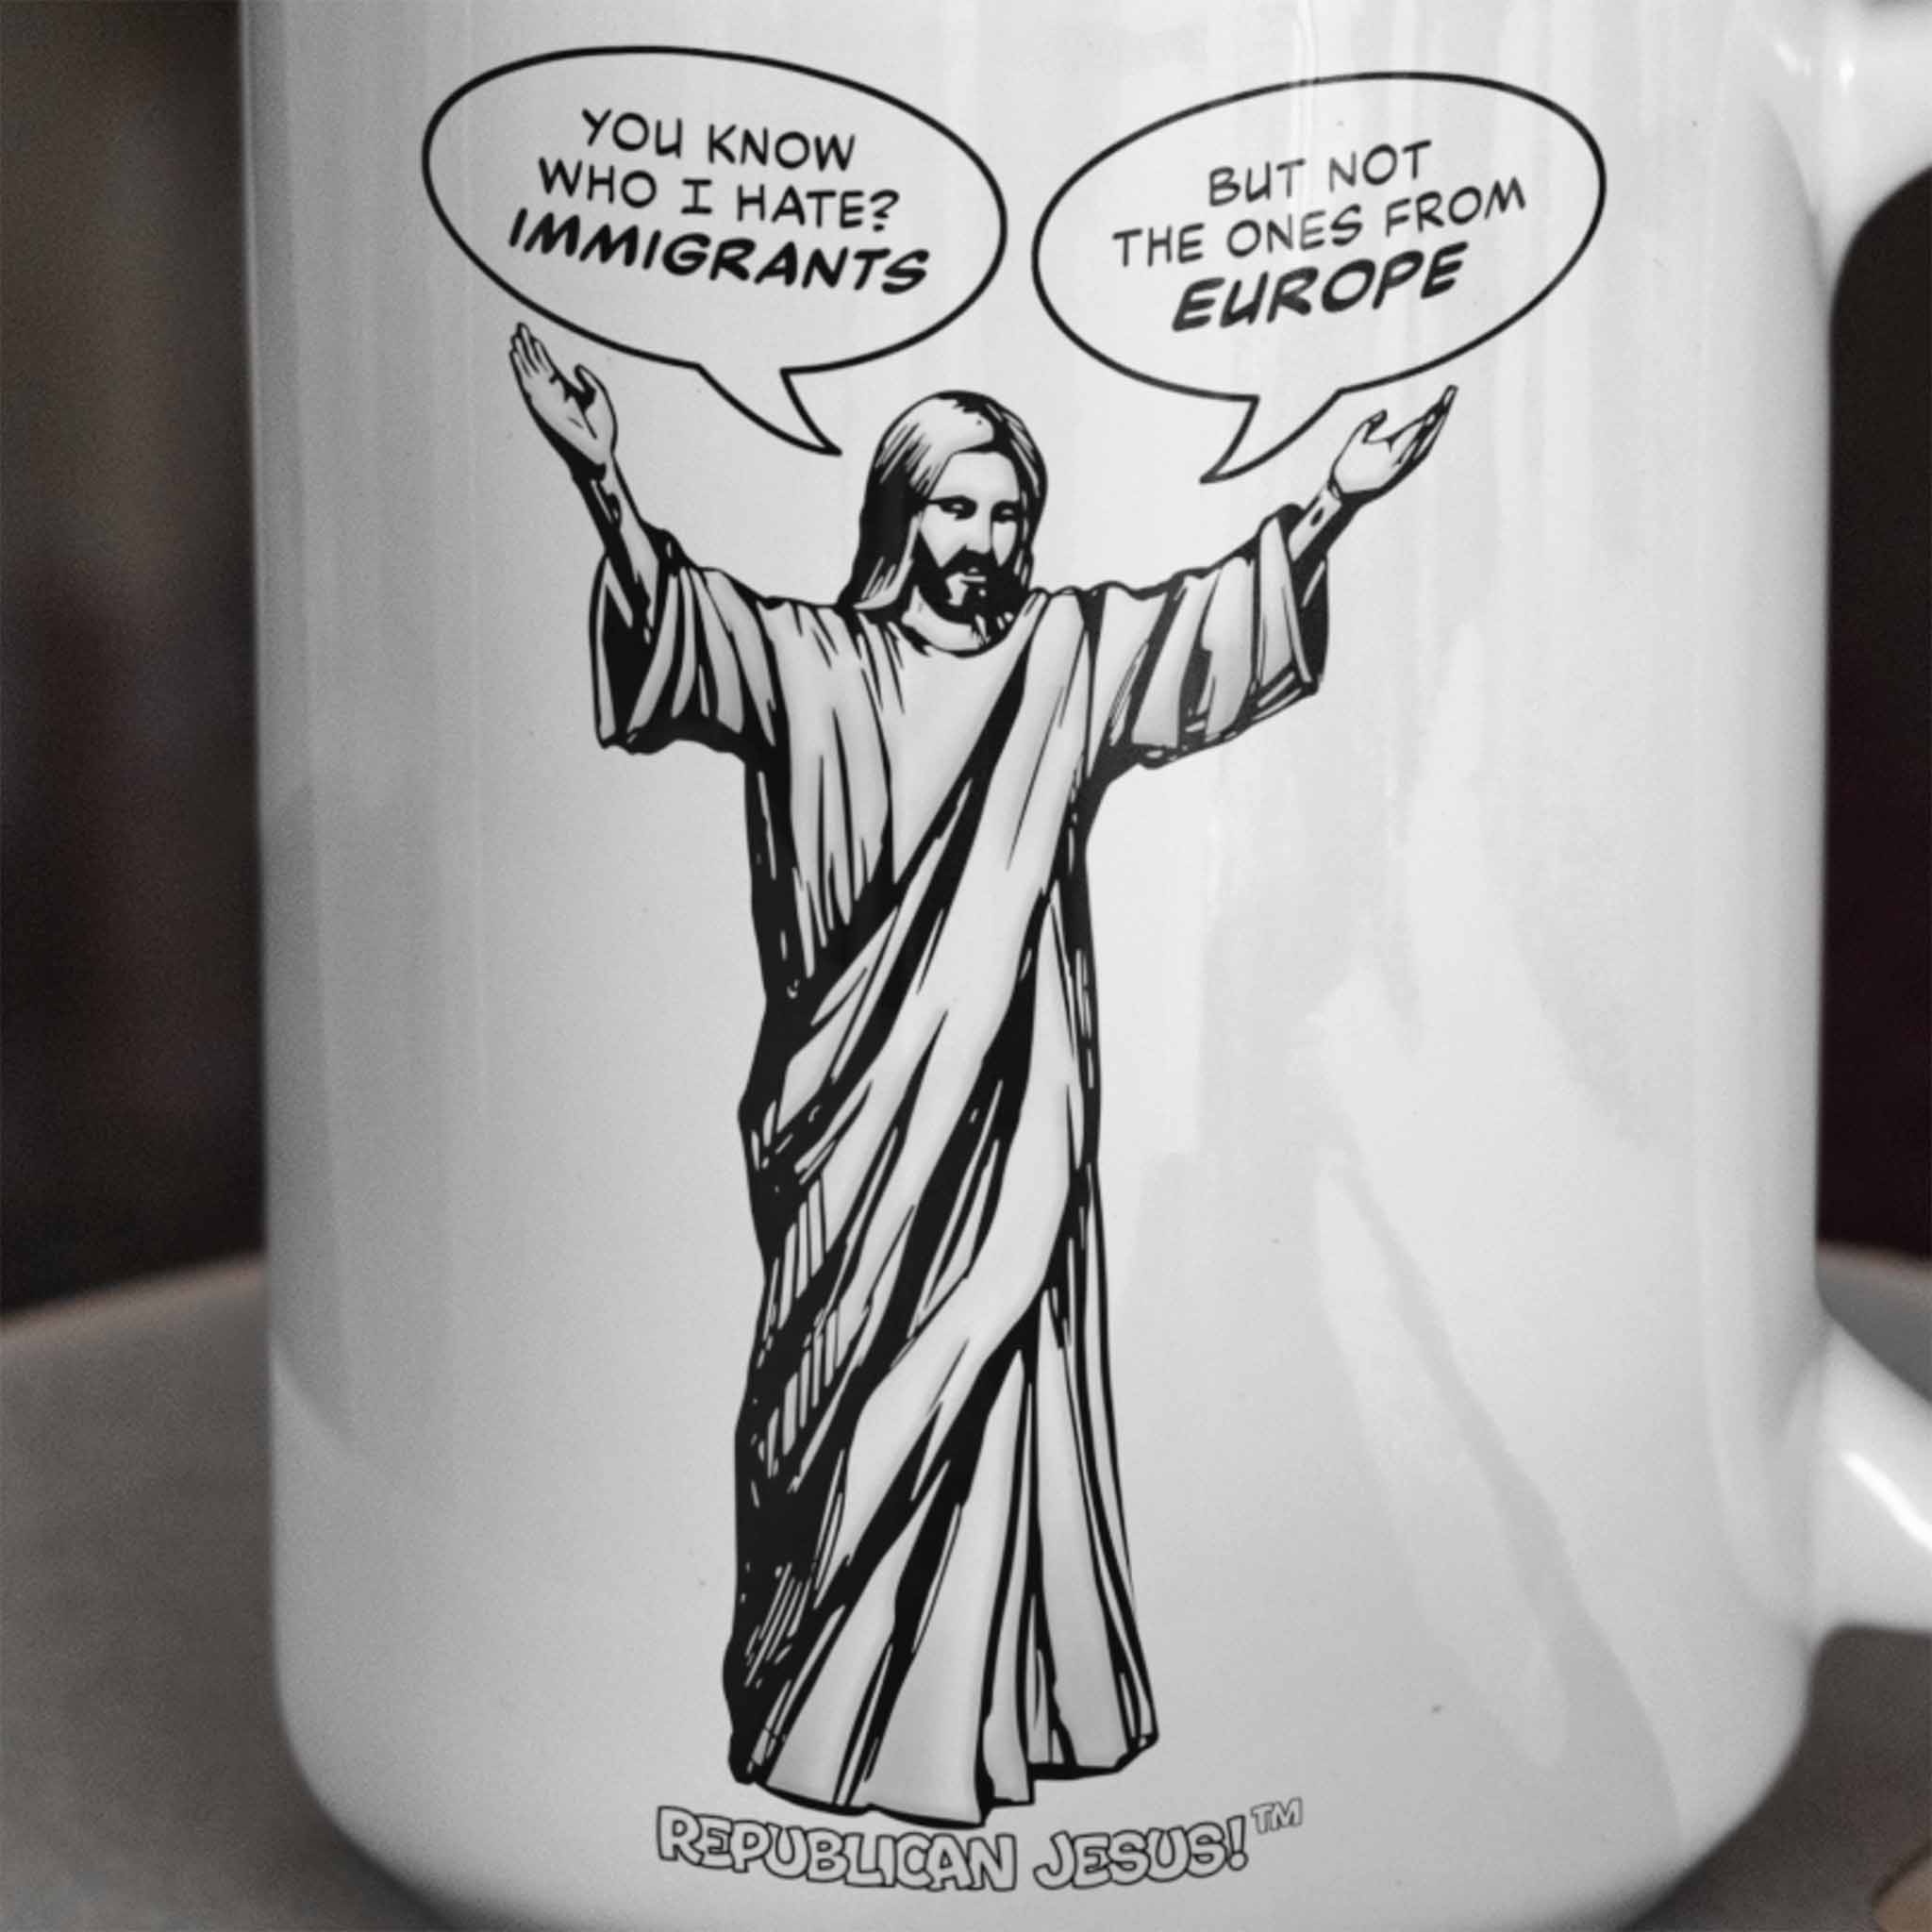 Republican Jesus!™ — "Immigrants" 15oz mug